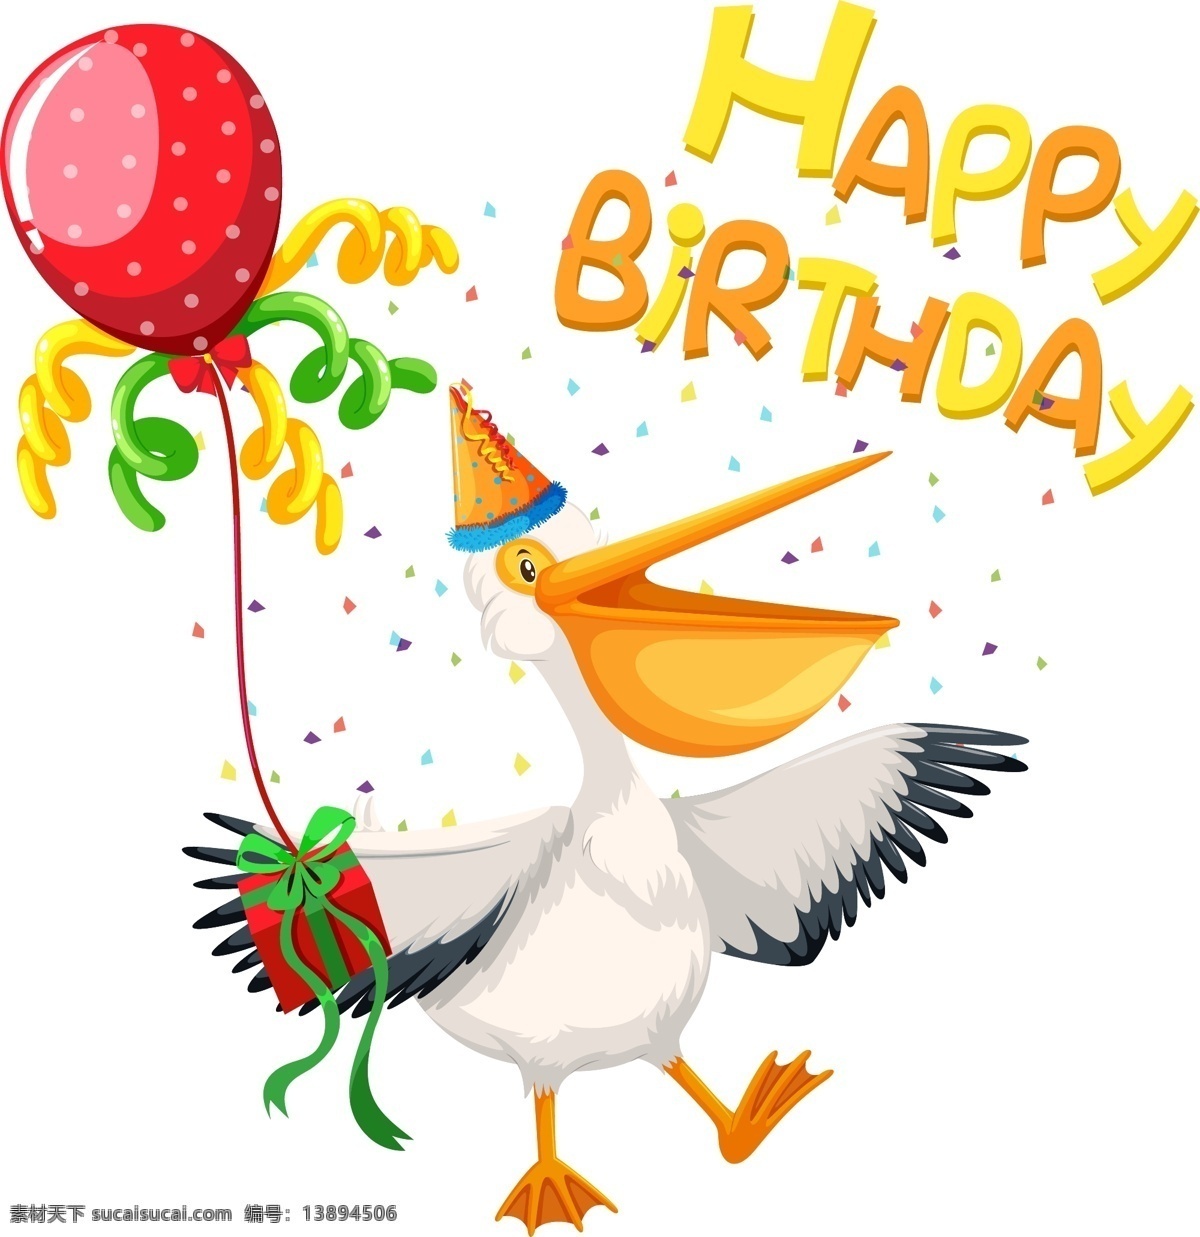 矢量鸭子 卡通鸭子 手绘鸭子 鸭子插画 鸭子生日快乐 生日庆祝 生日元素 生日素材 矢量气球 生日气球 生日快乐英文 可爱鸭子 动物 生物世界 野生动物